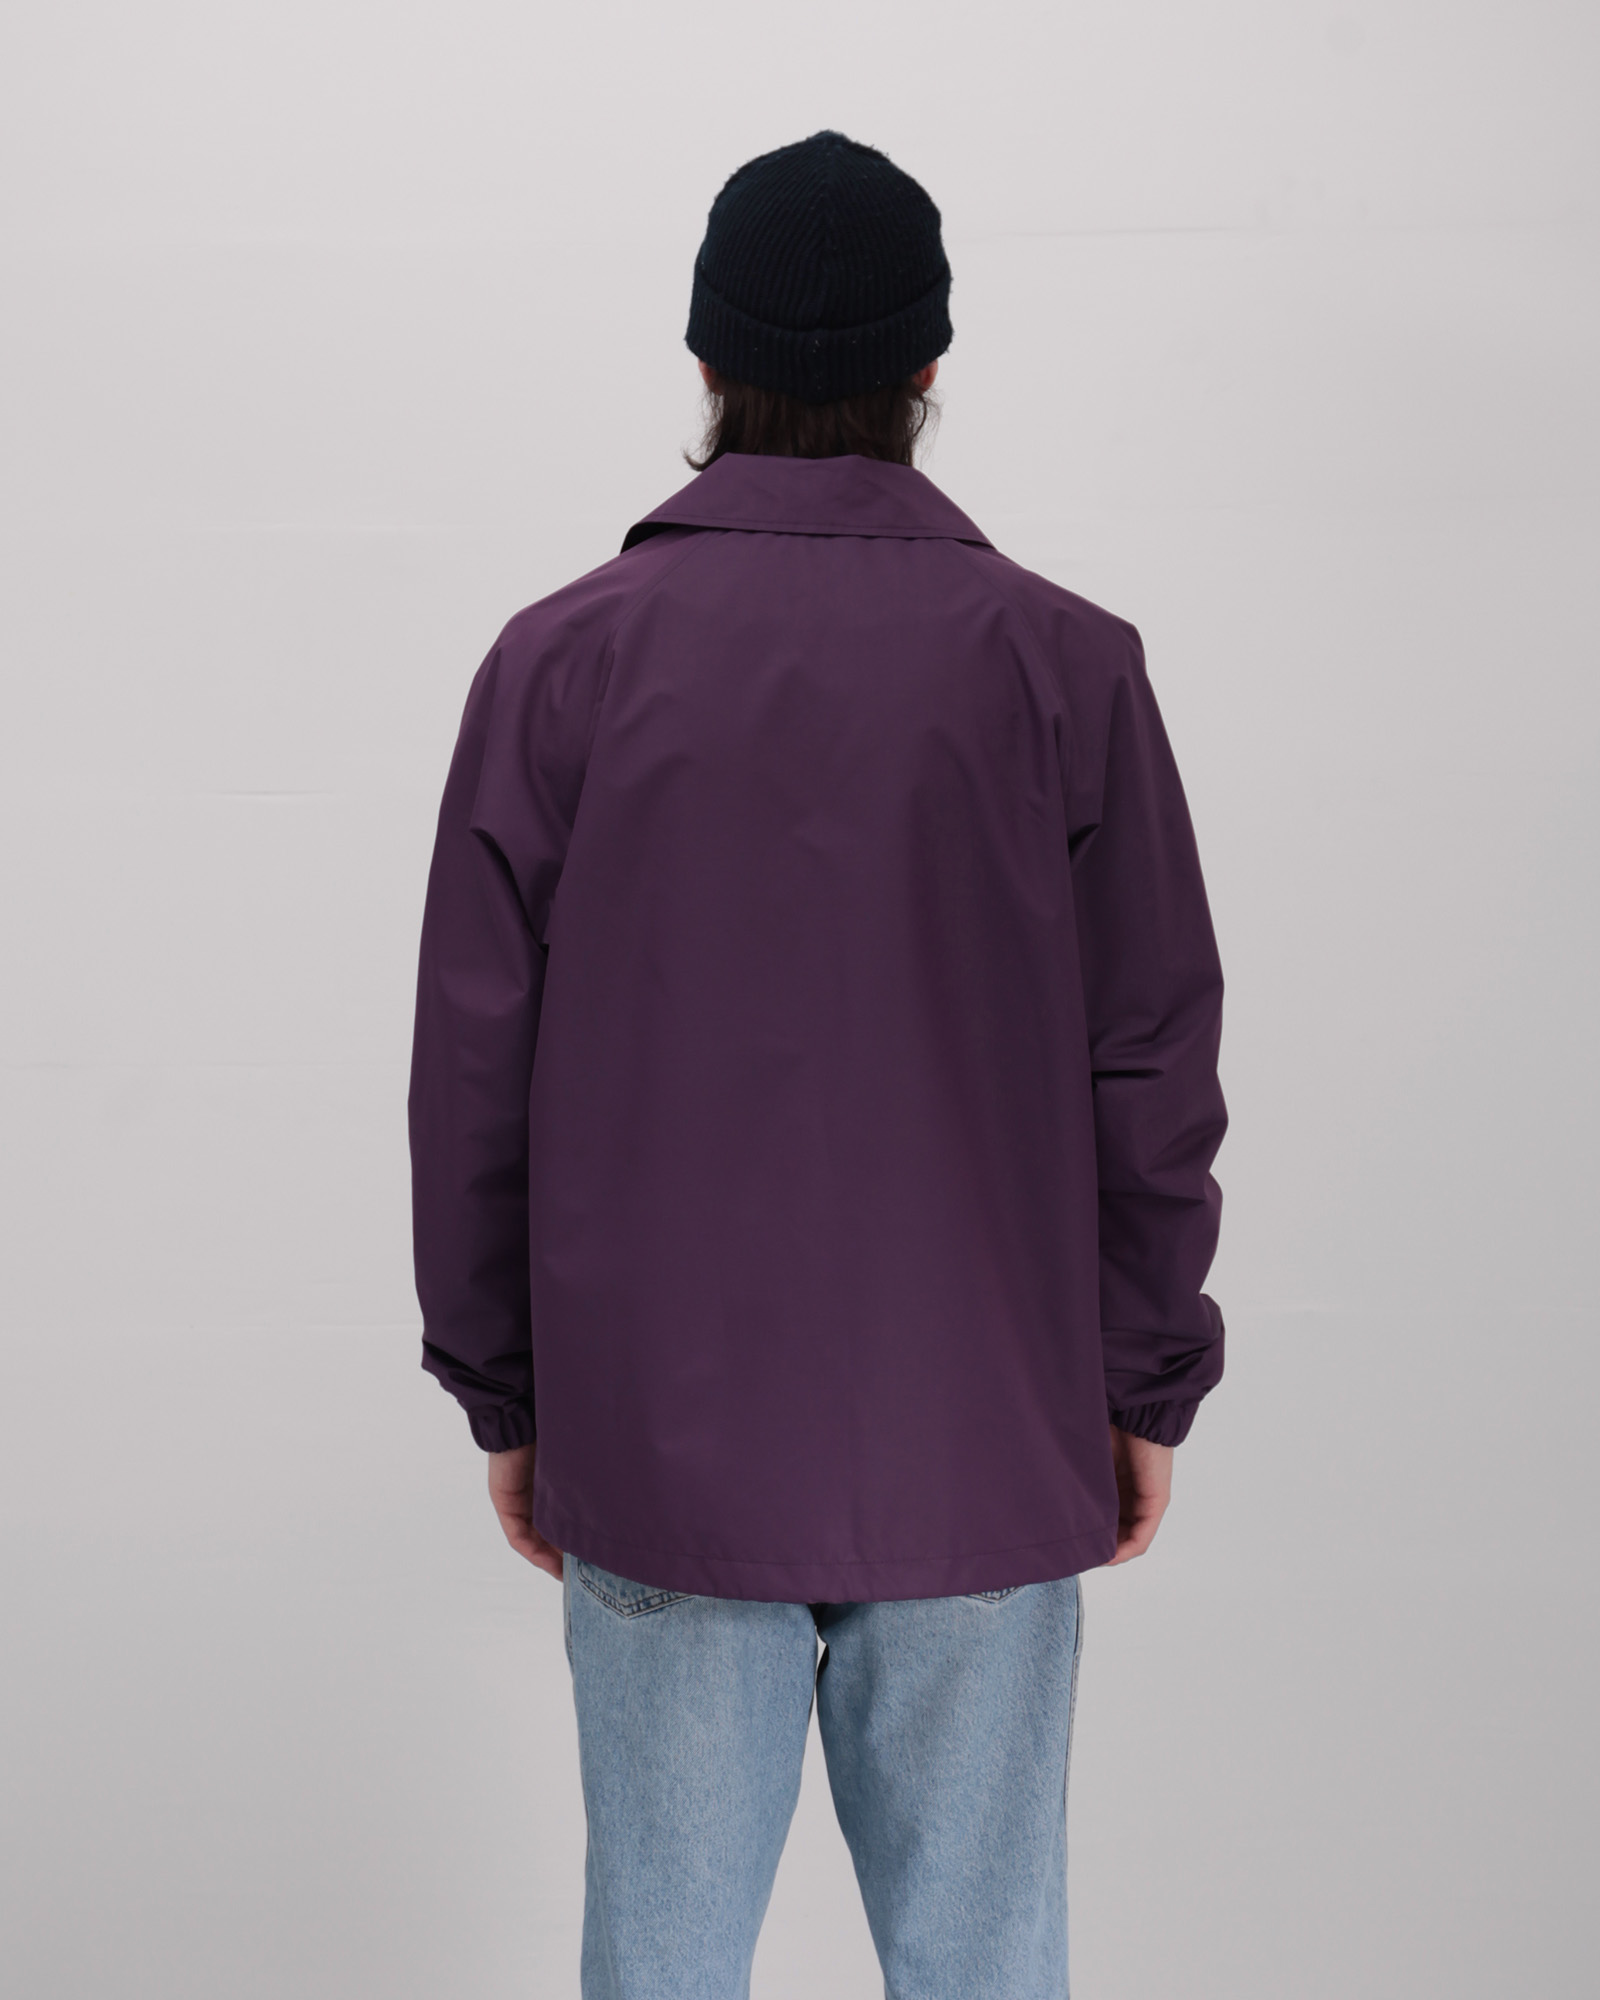 Куртка Anteater Coach Jacket - фото 3